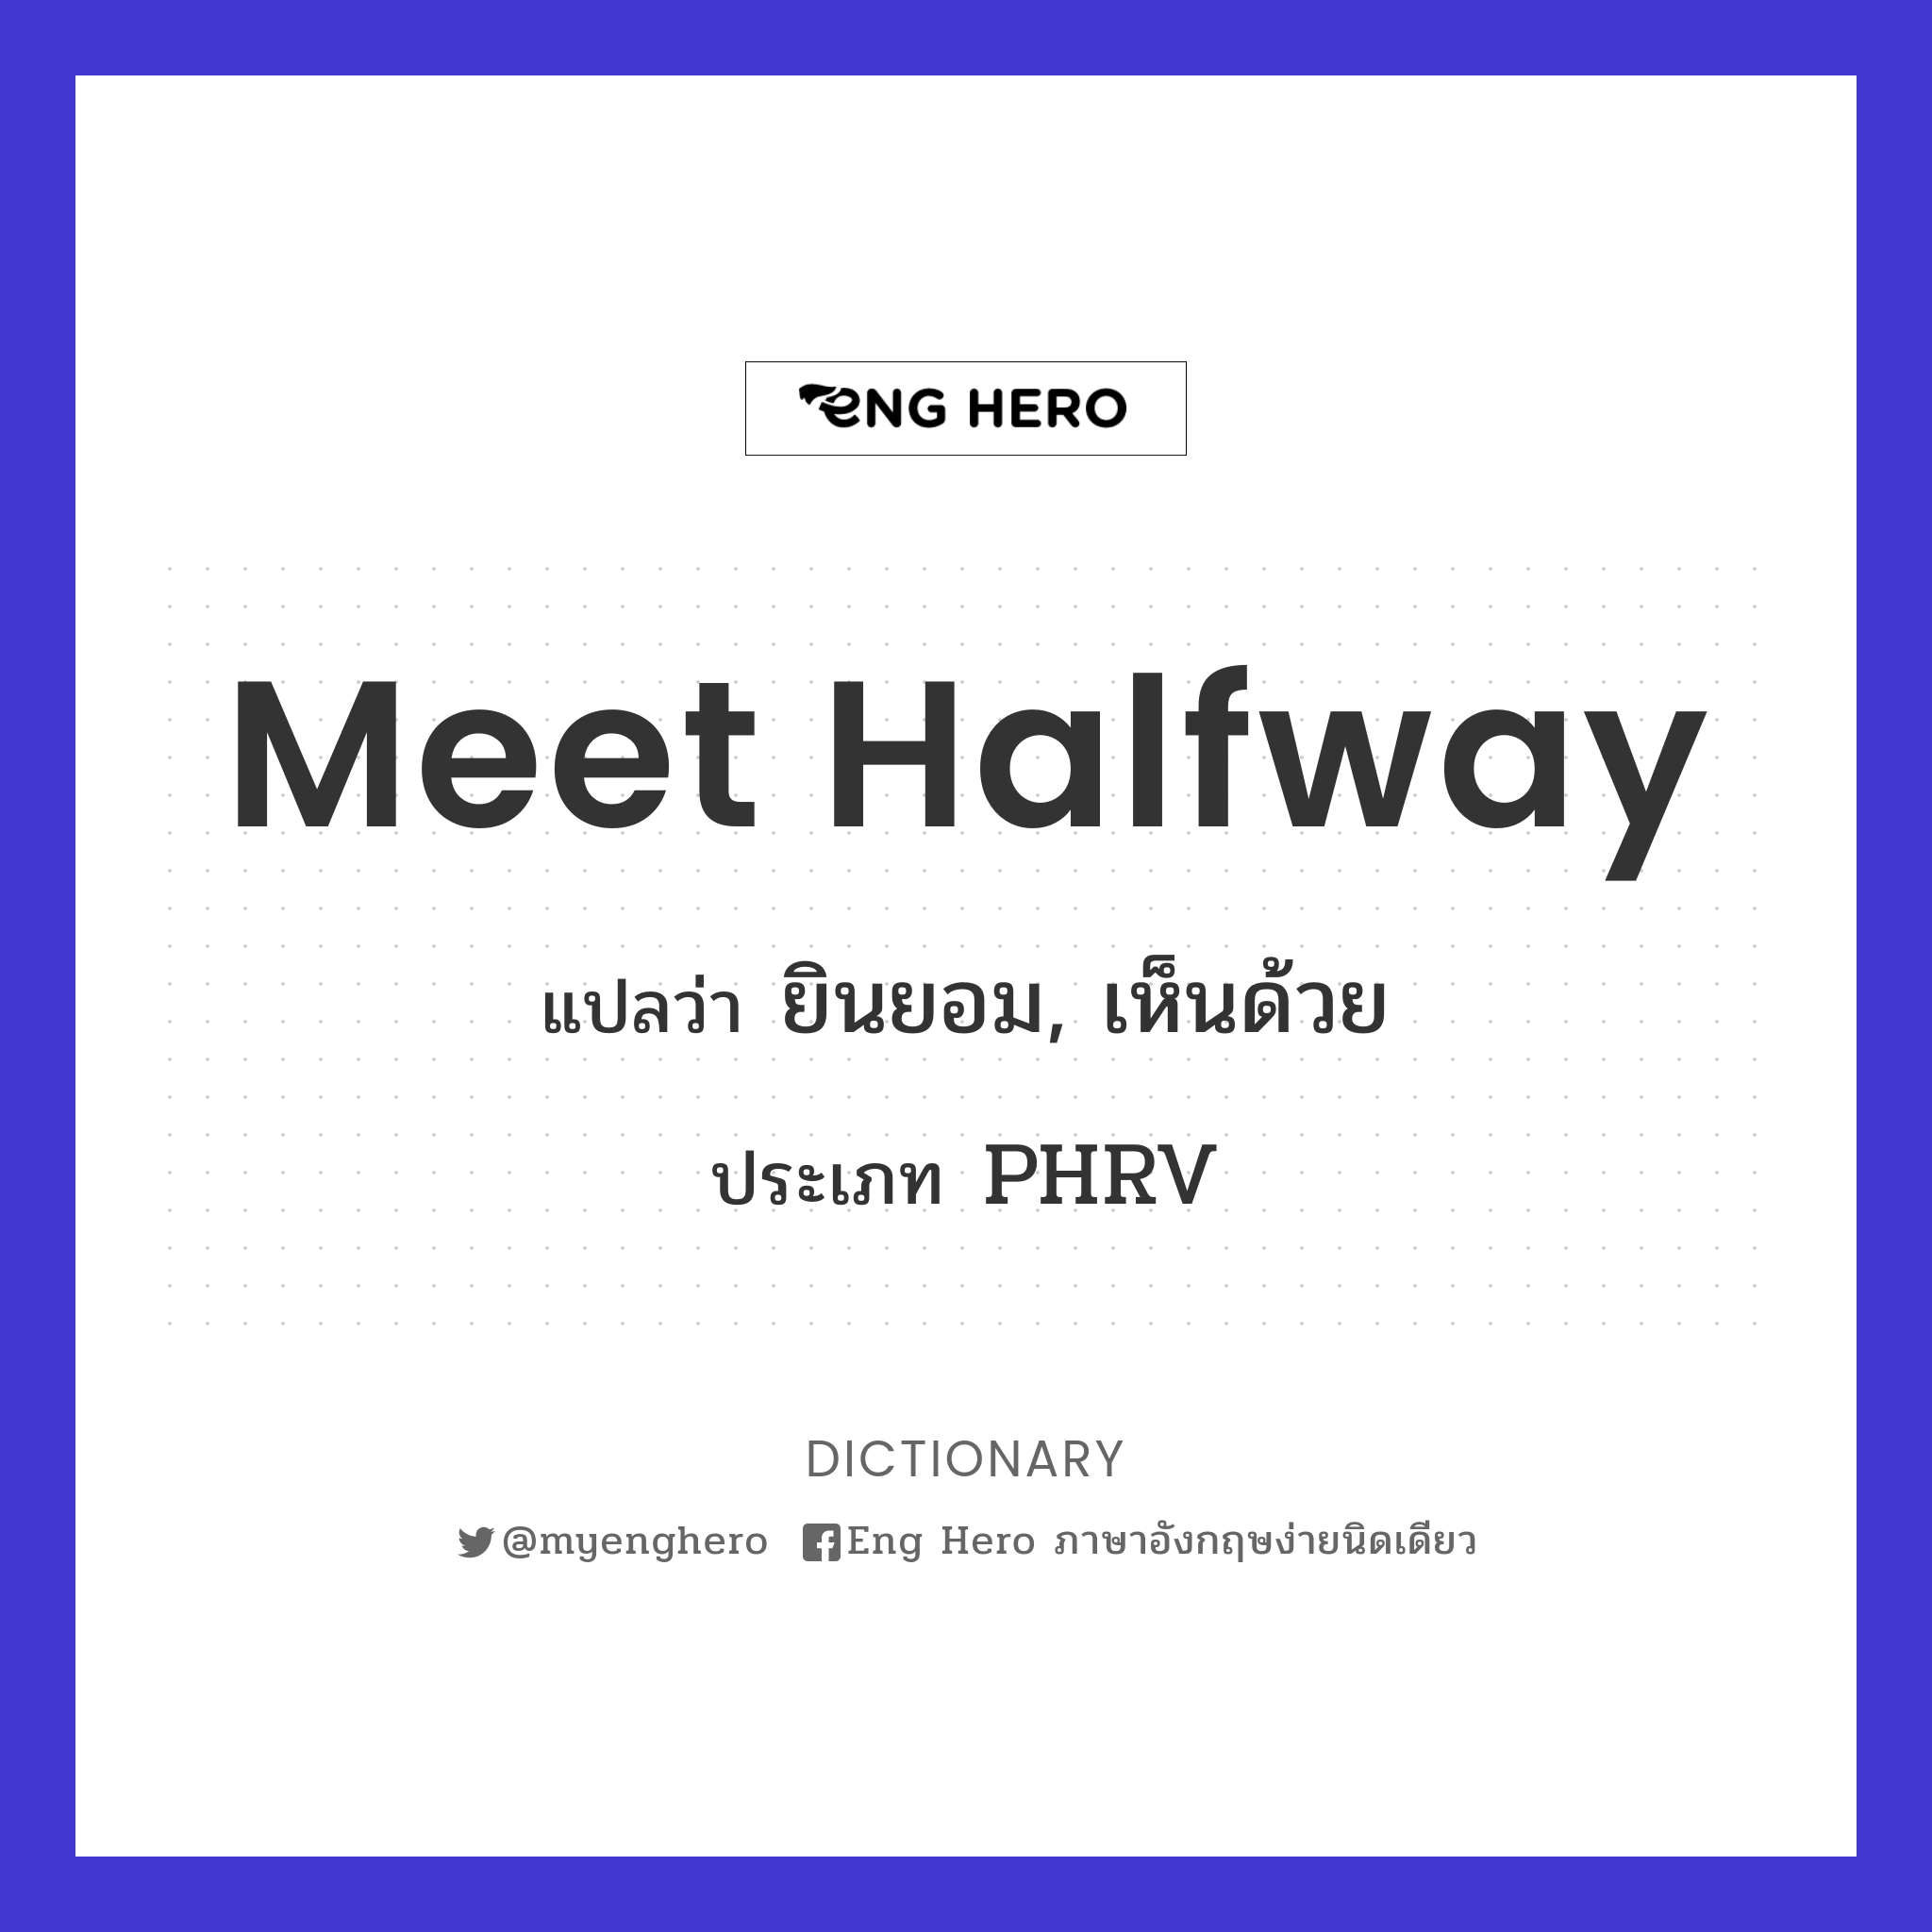 meet halfway